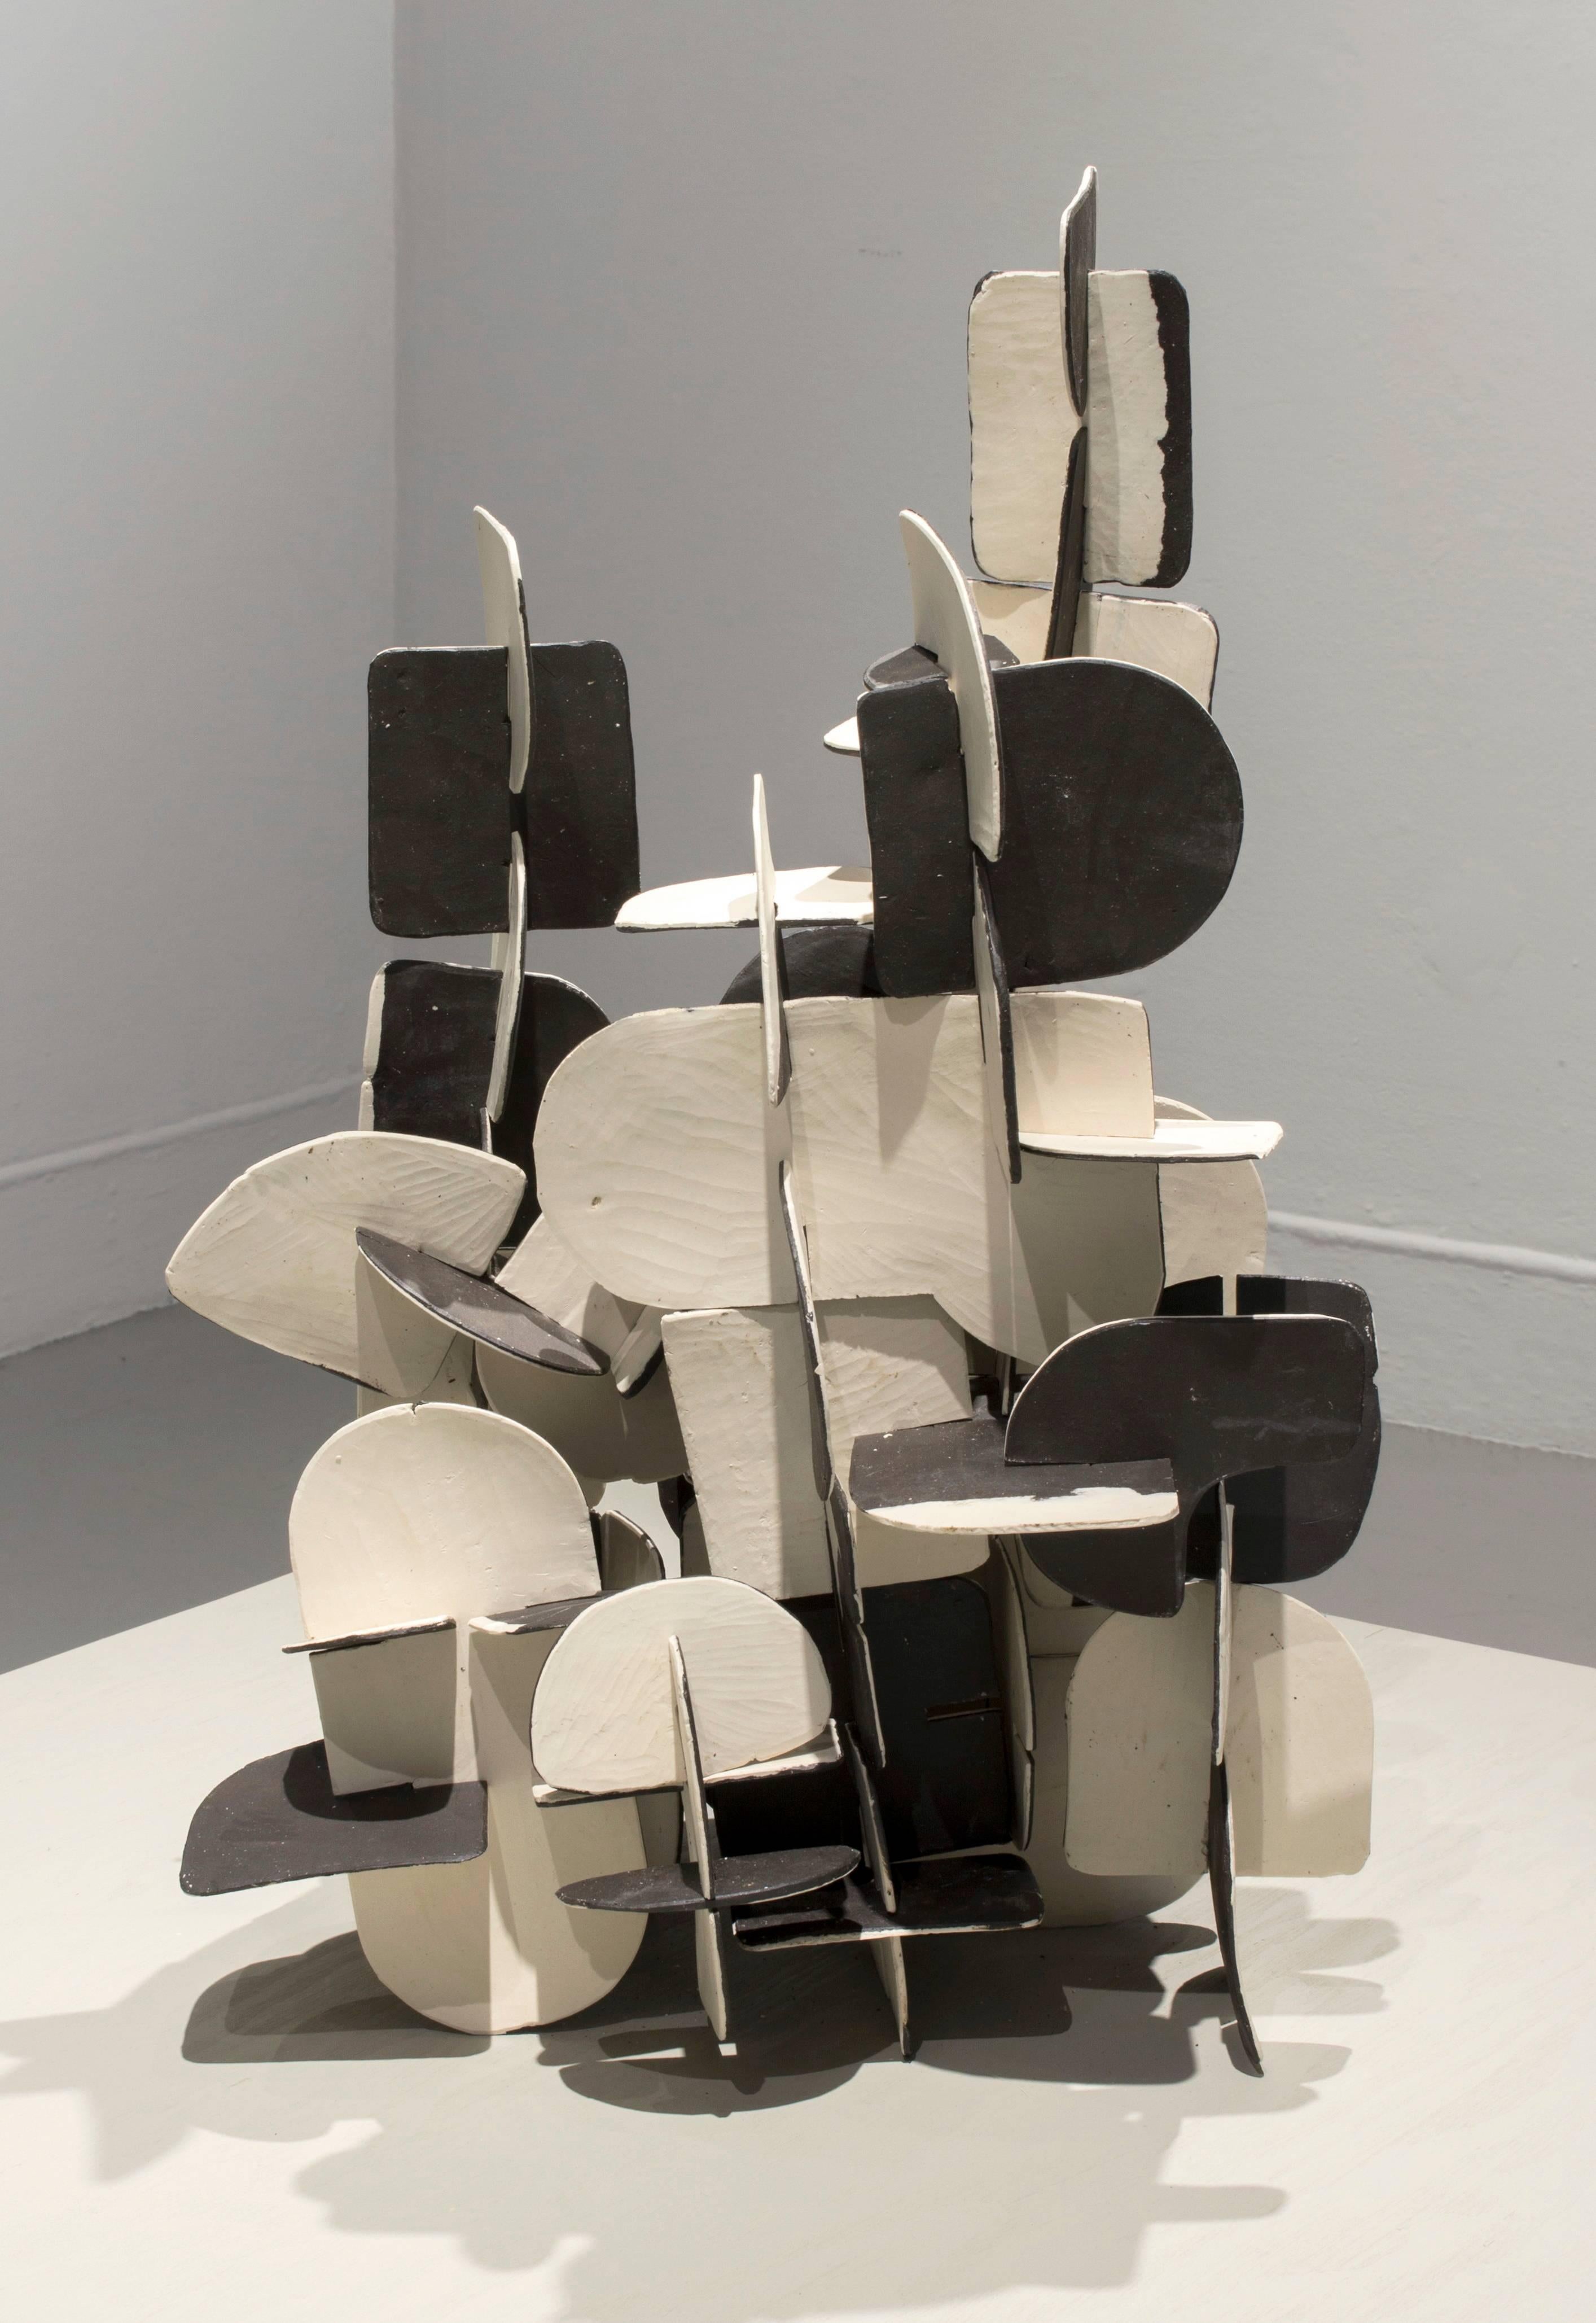 Anna Hepler Abstract Sculpture - Jigsaw